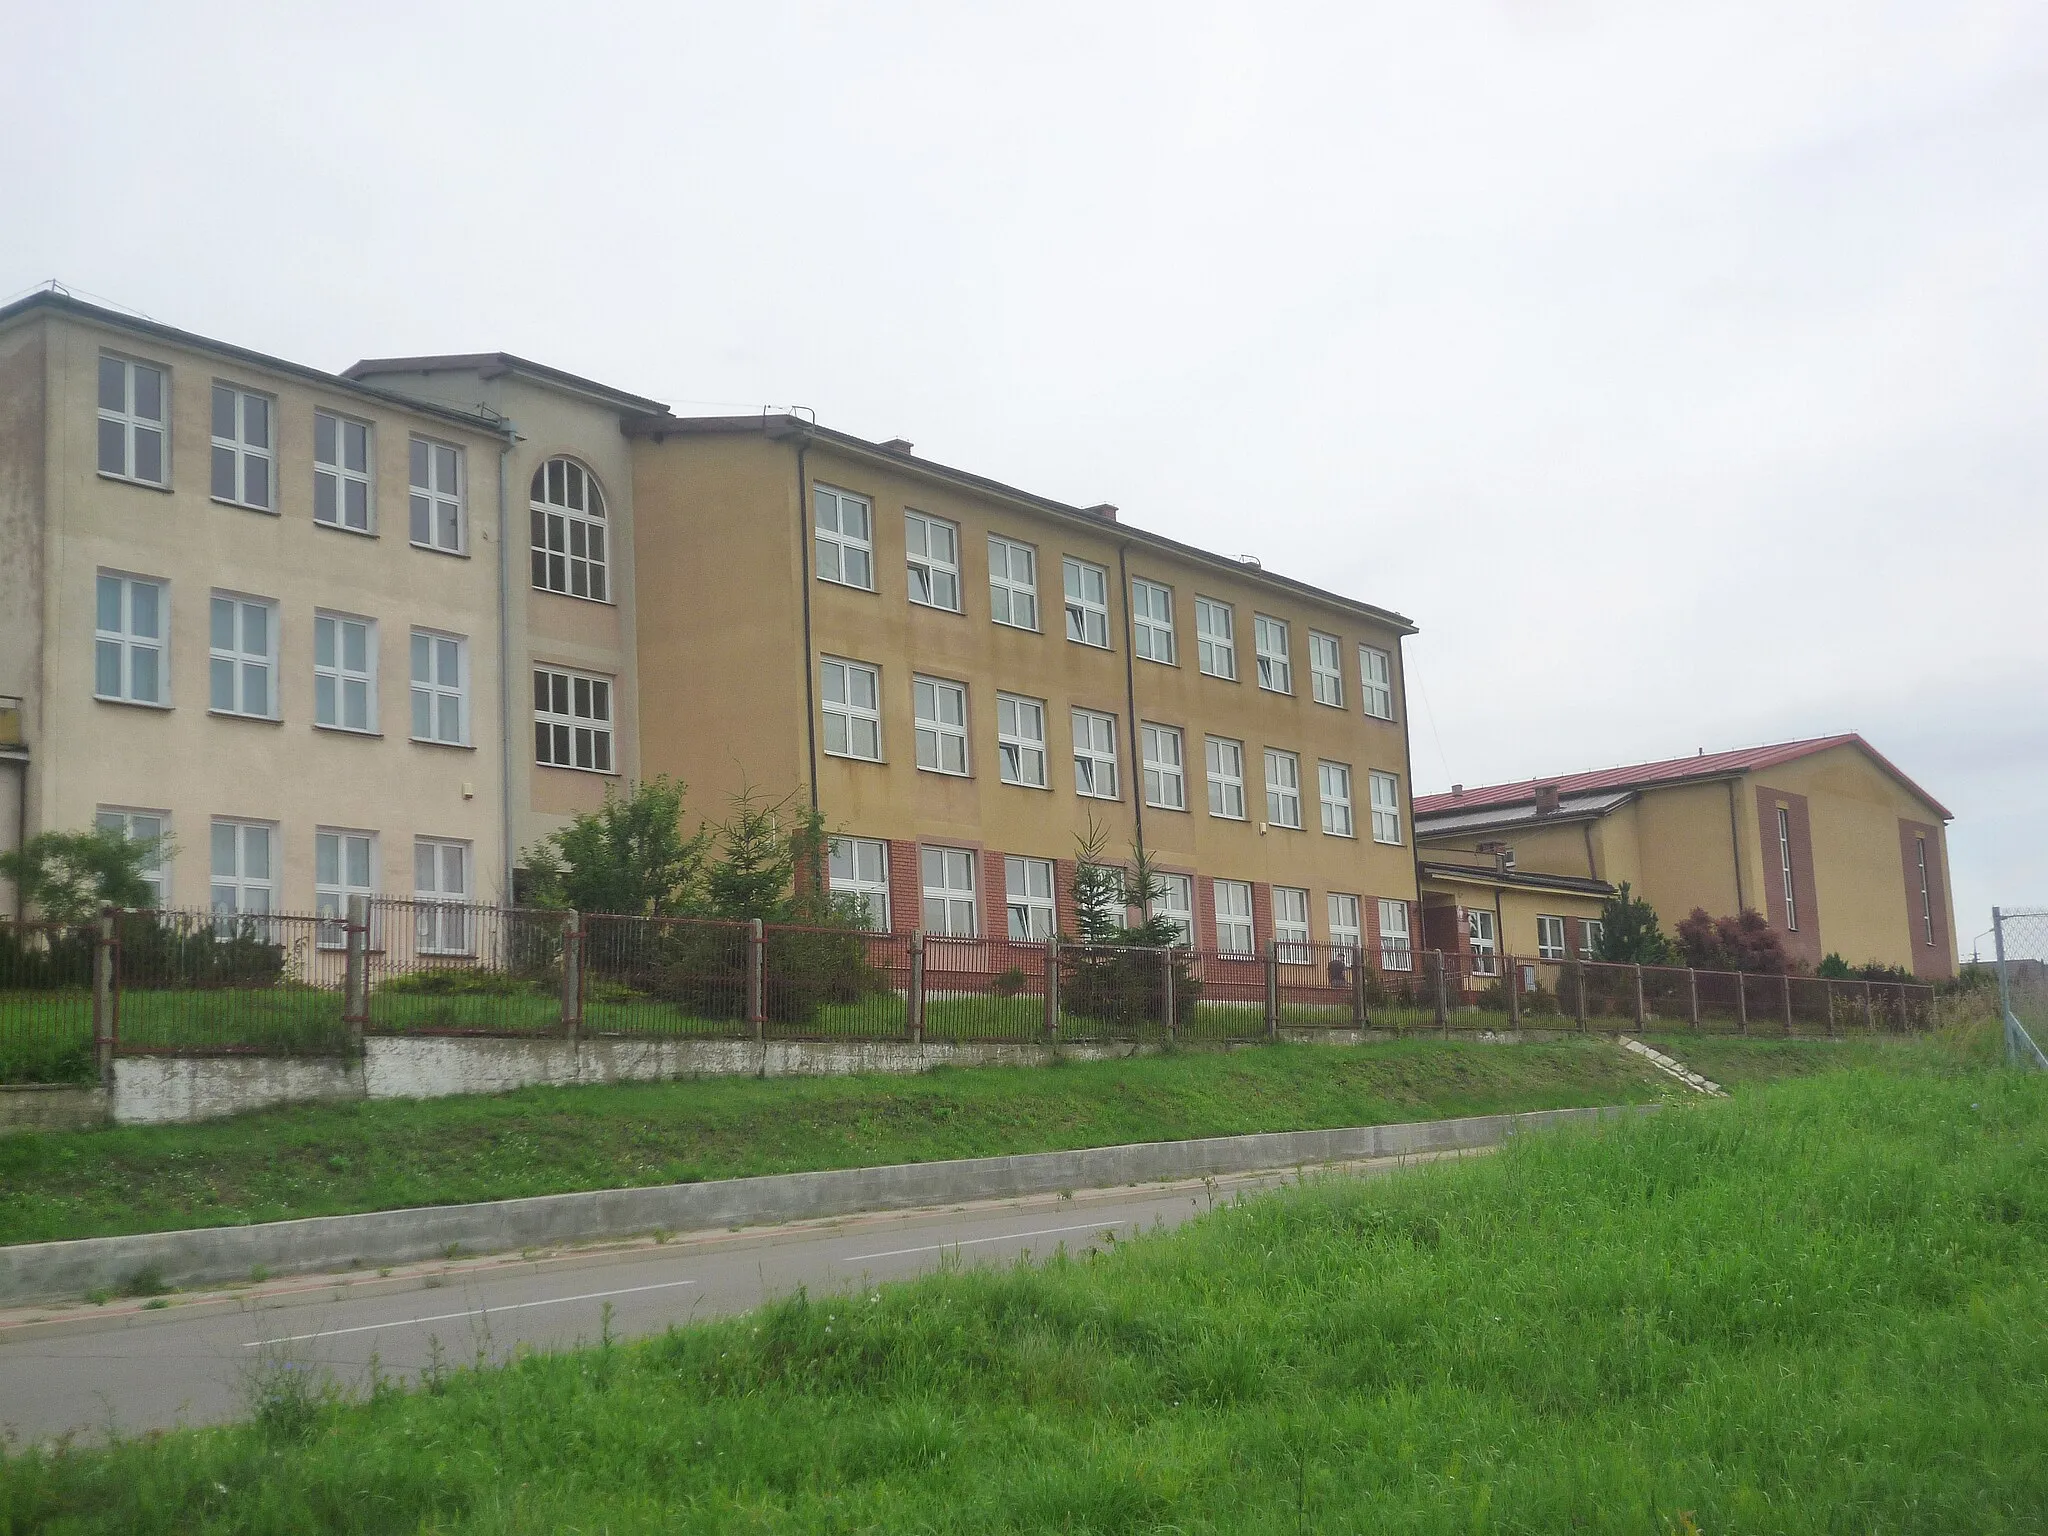 Photo showing: The school in Kulesze Kościelne, Poland